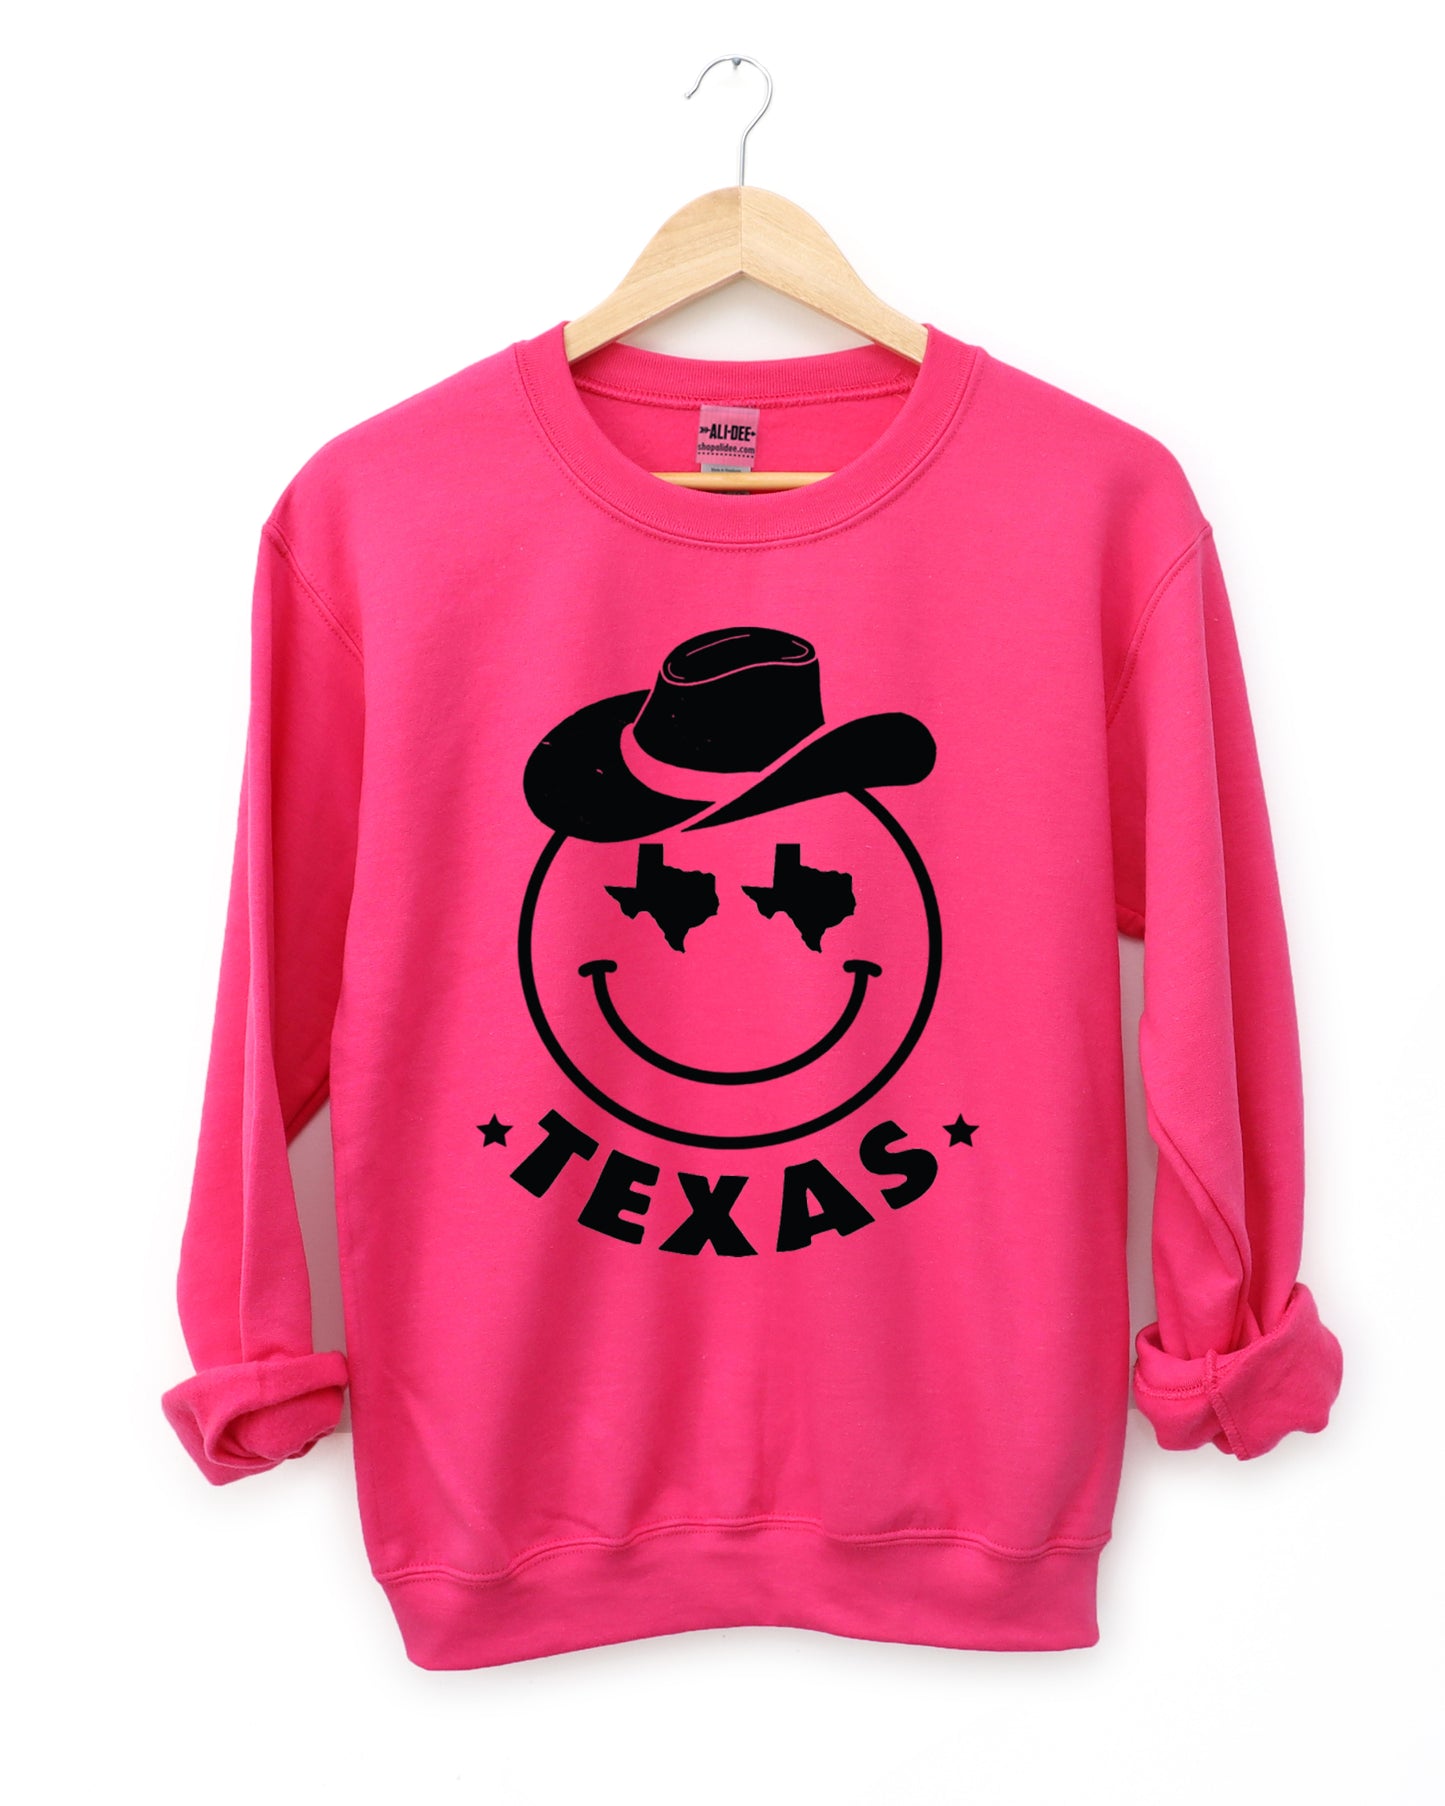 Texas Smiley Sweatshirt - Cyber Pink